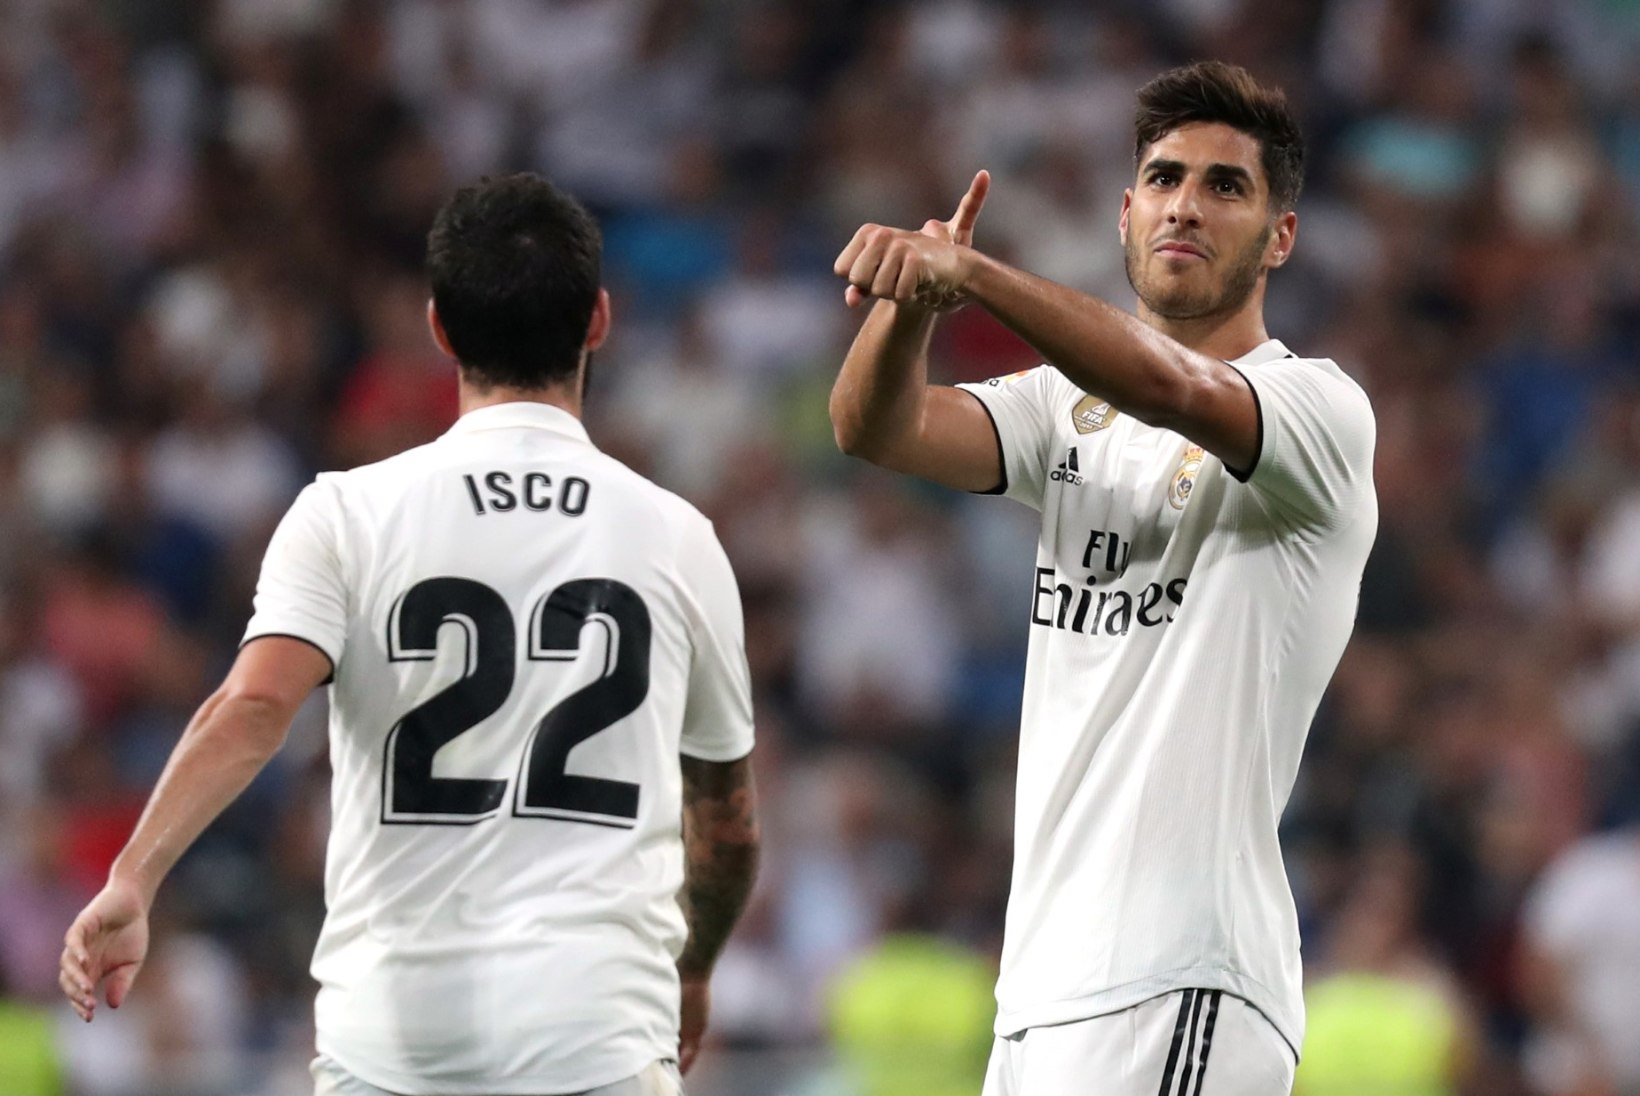 Napi võidu saanud Madridi Real jätkab koduliigas eeskujulikult